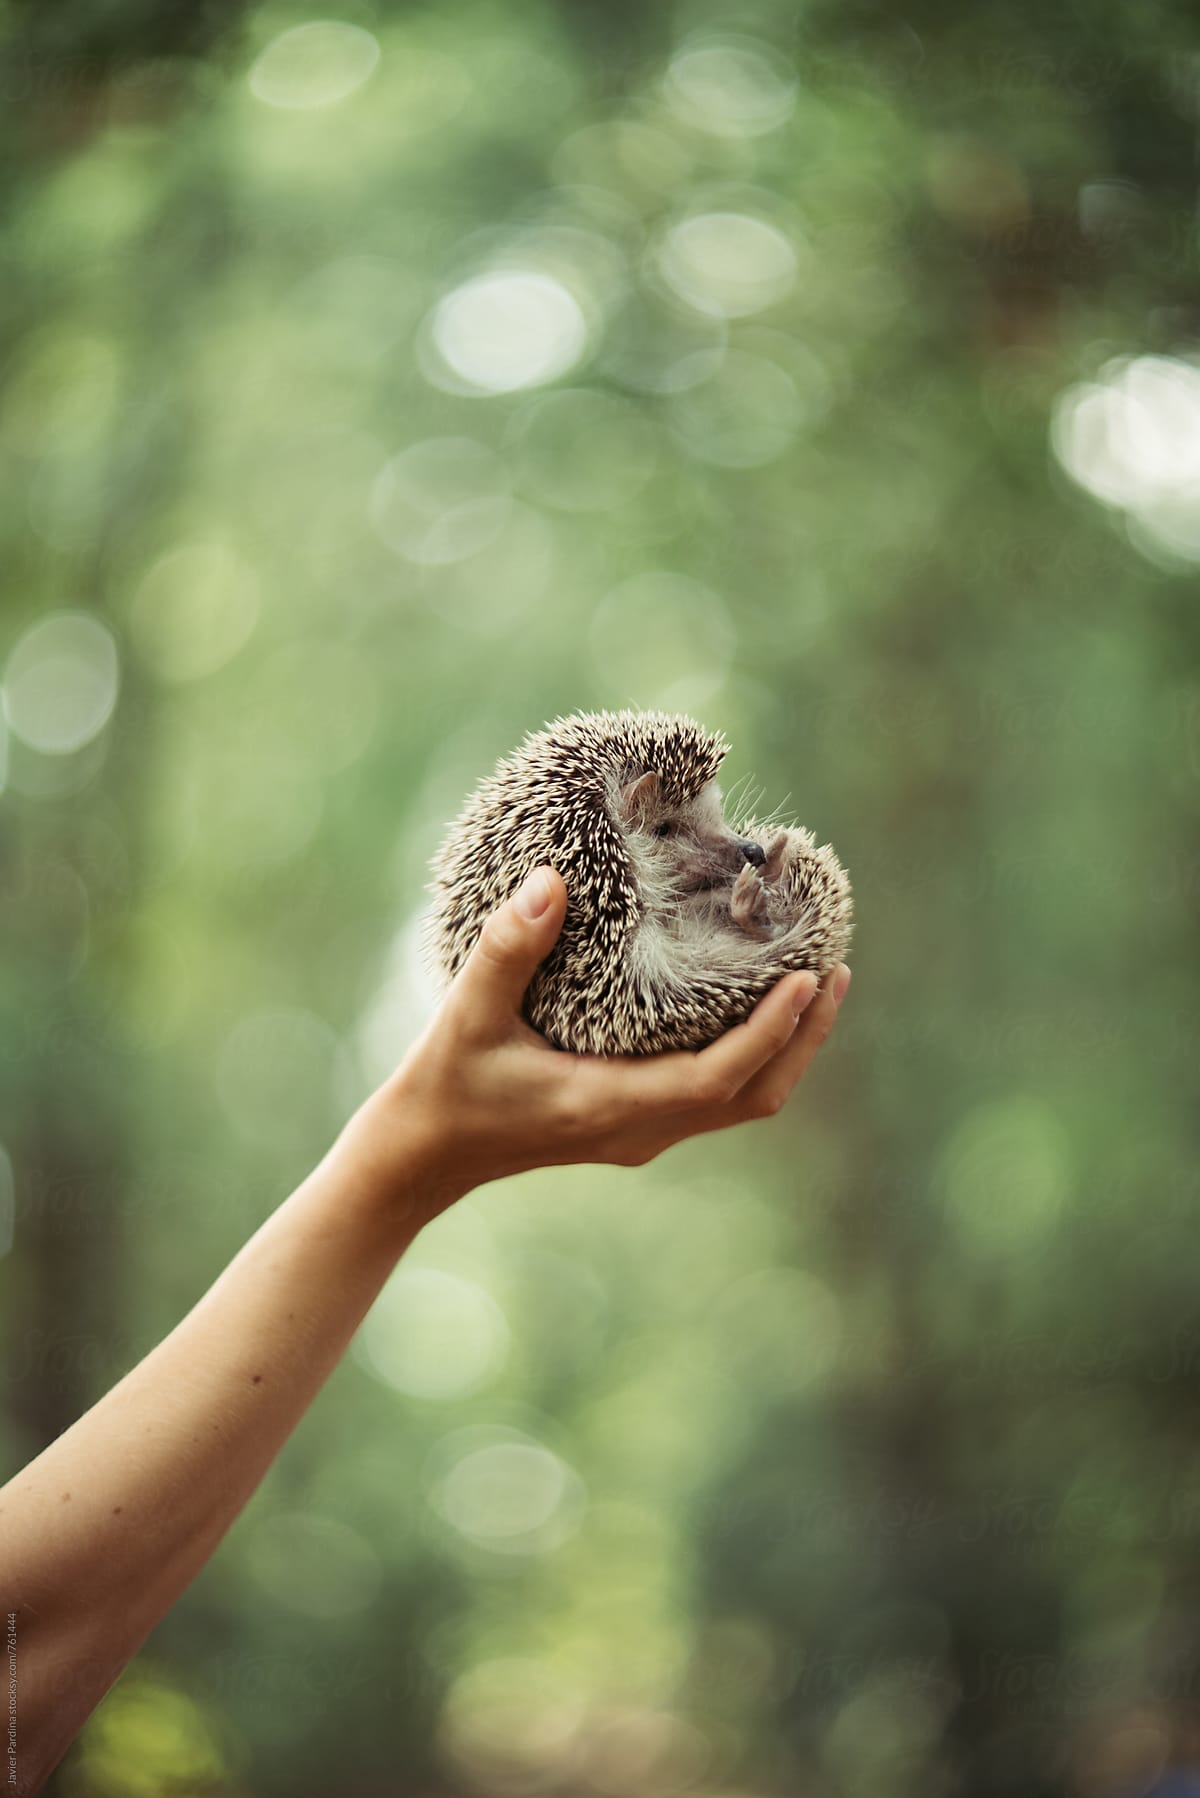 hedgehog in the hands